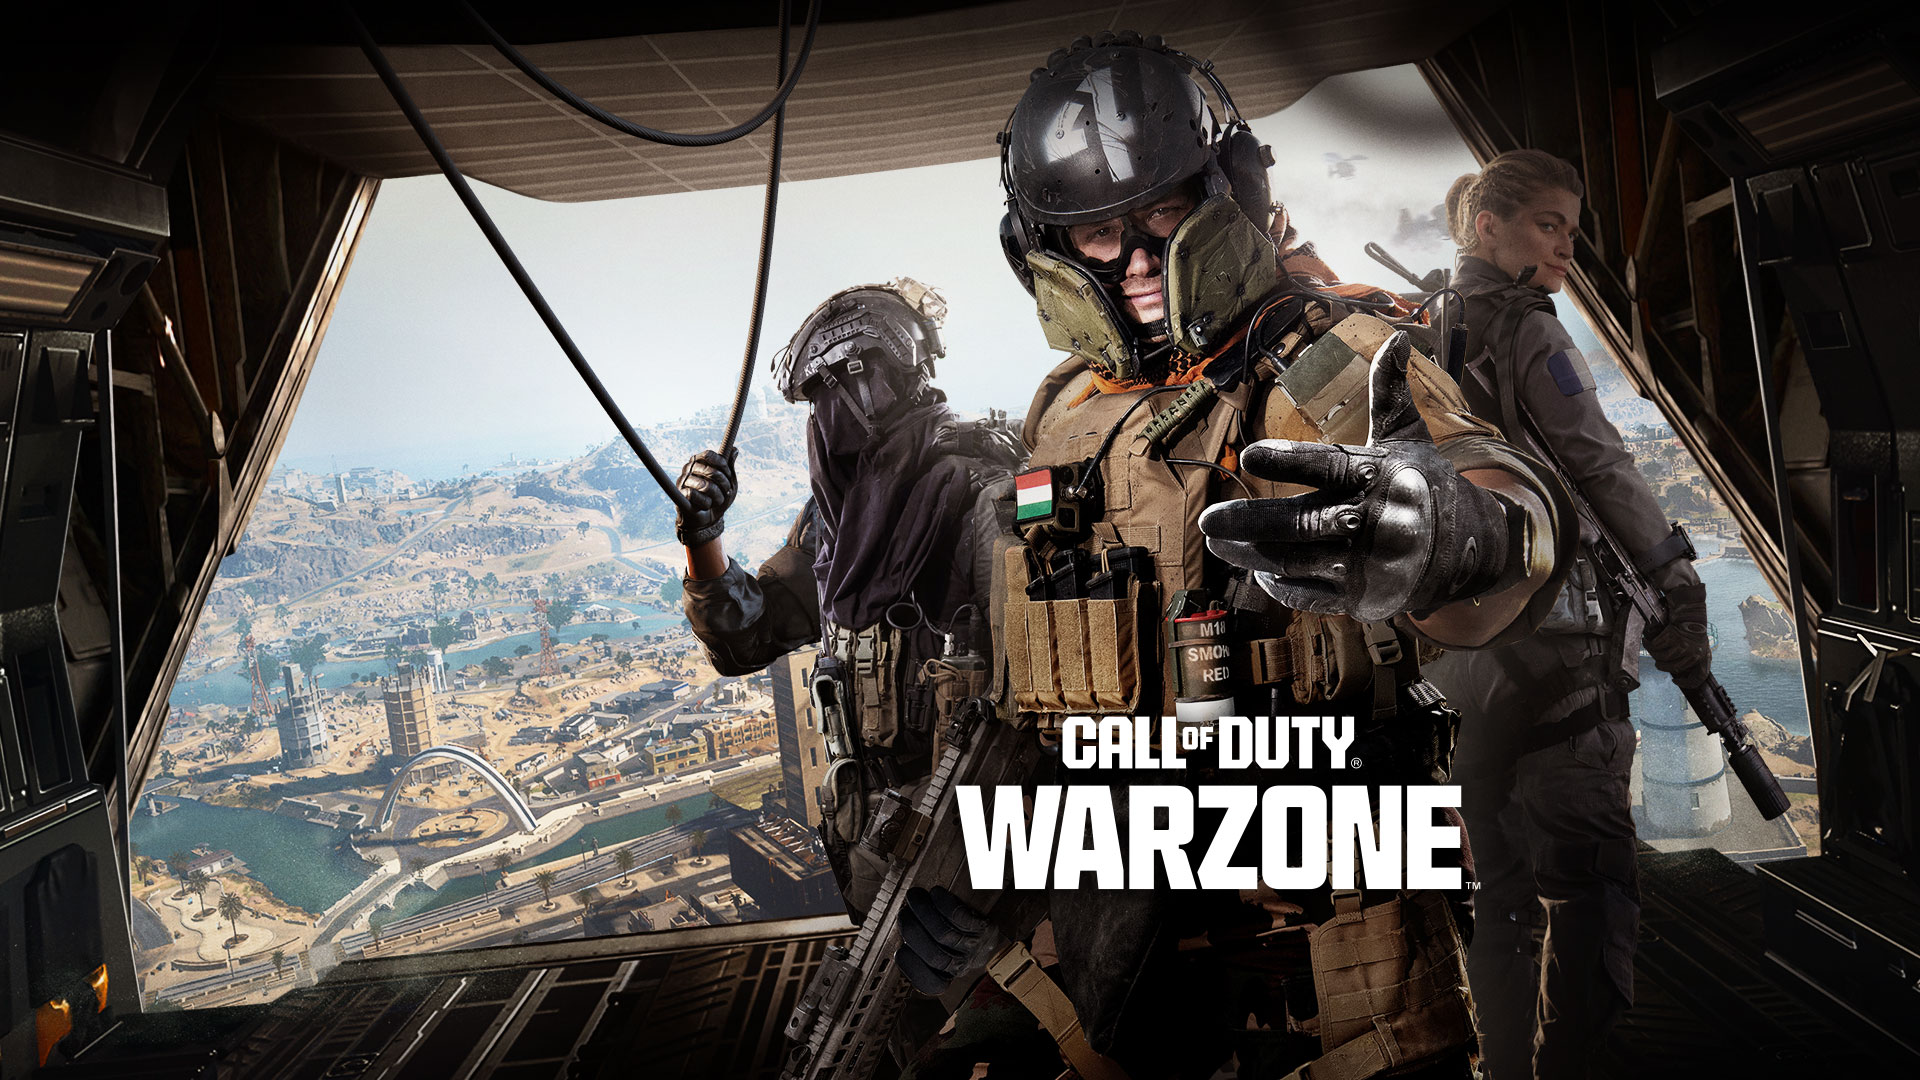 Call of Duty Warzone, drie Operators staan achter in een transportvliegtuig en nodigen je uit om deel te nemen aan de actie.